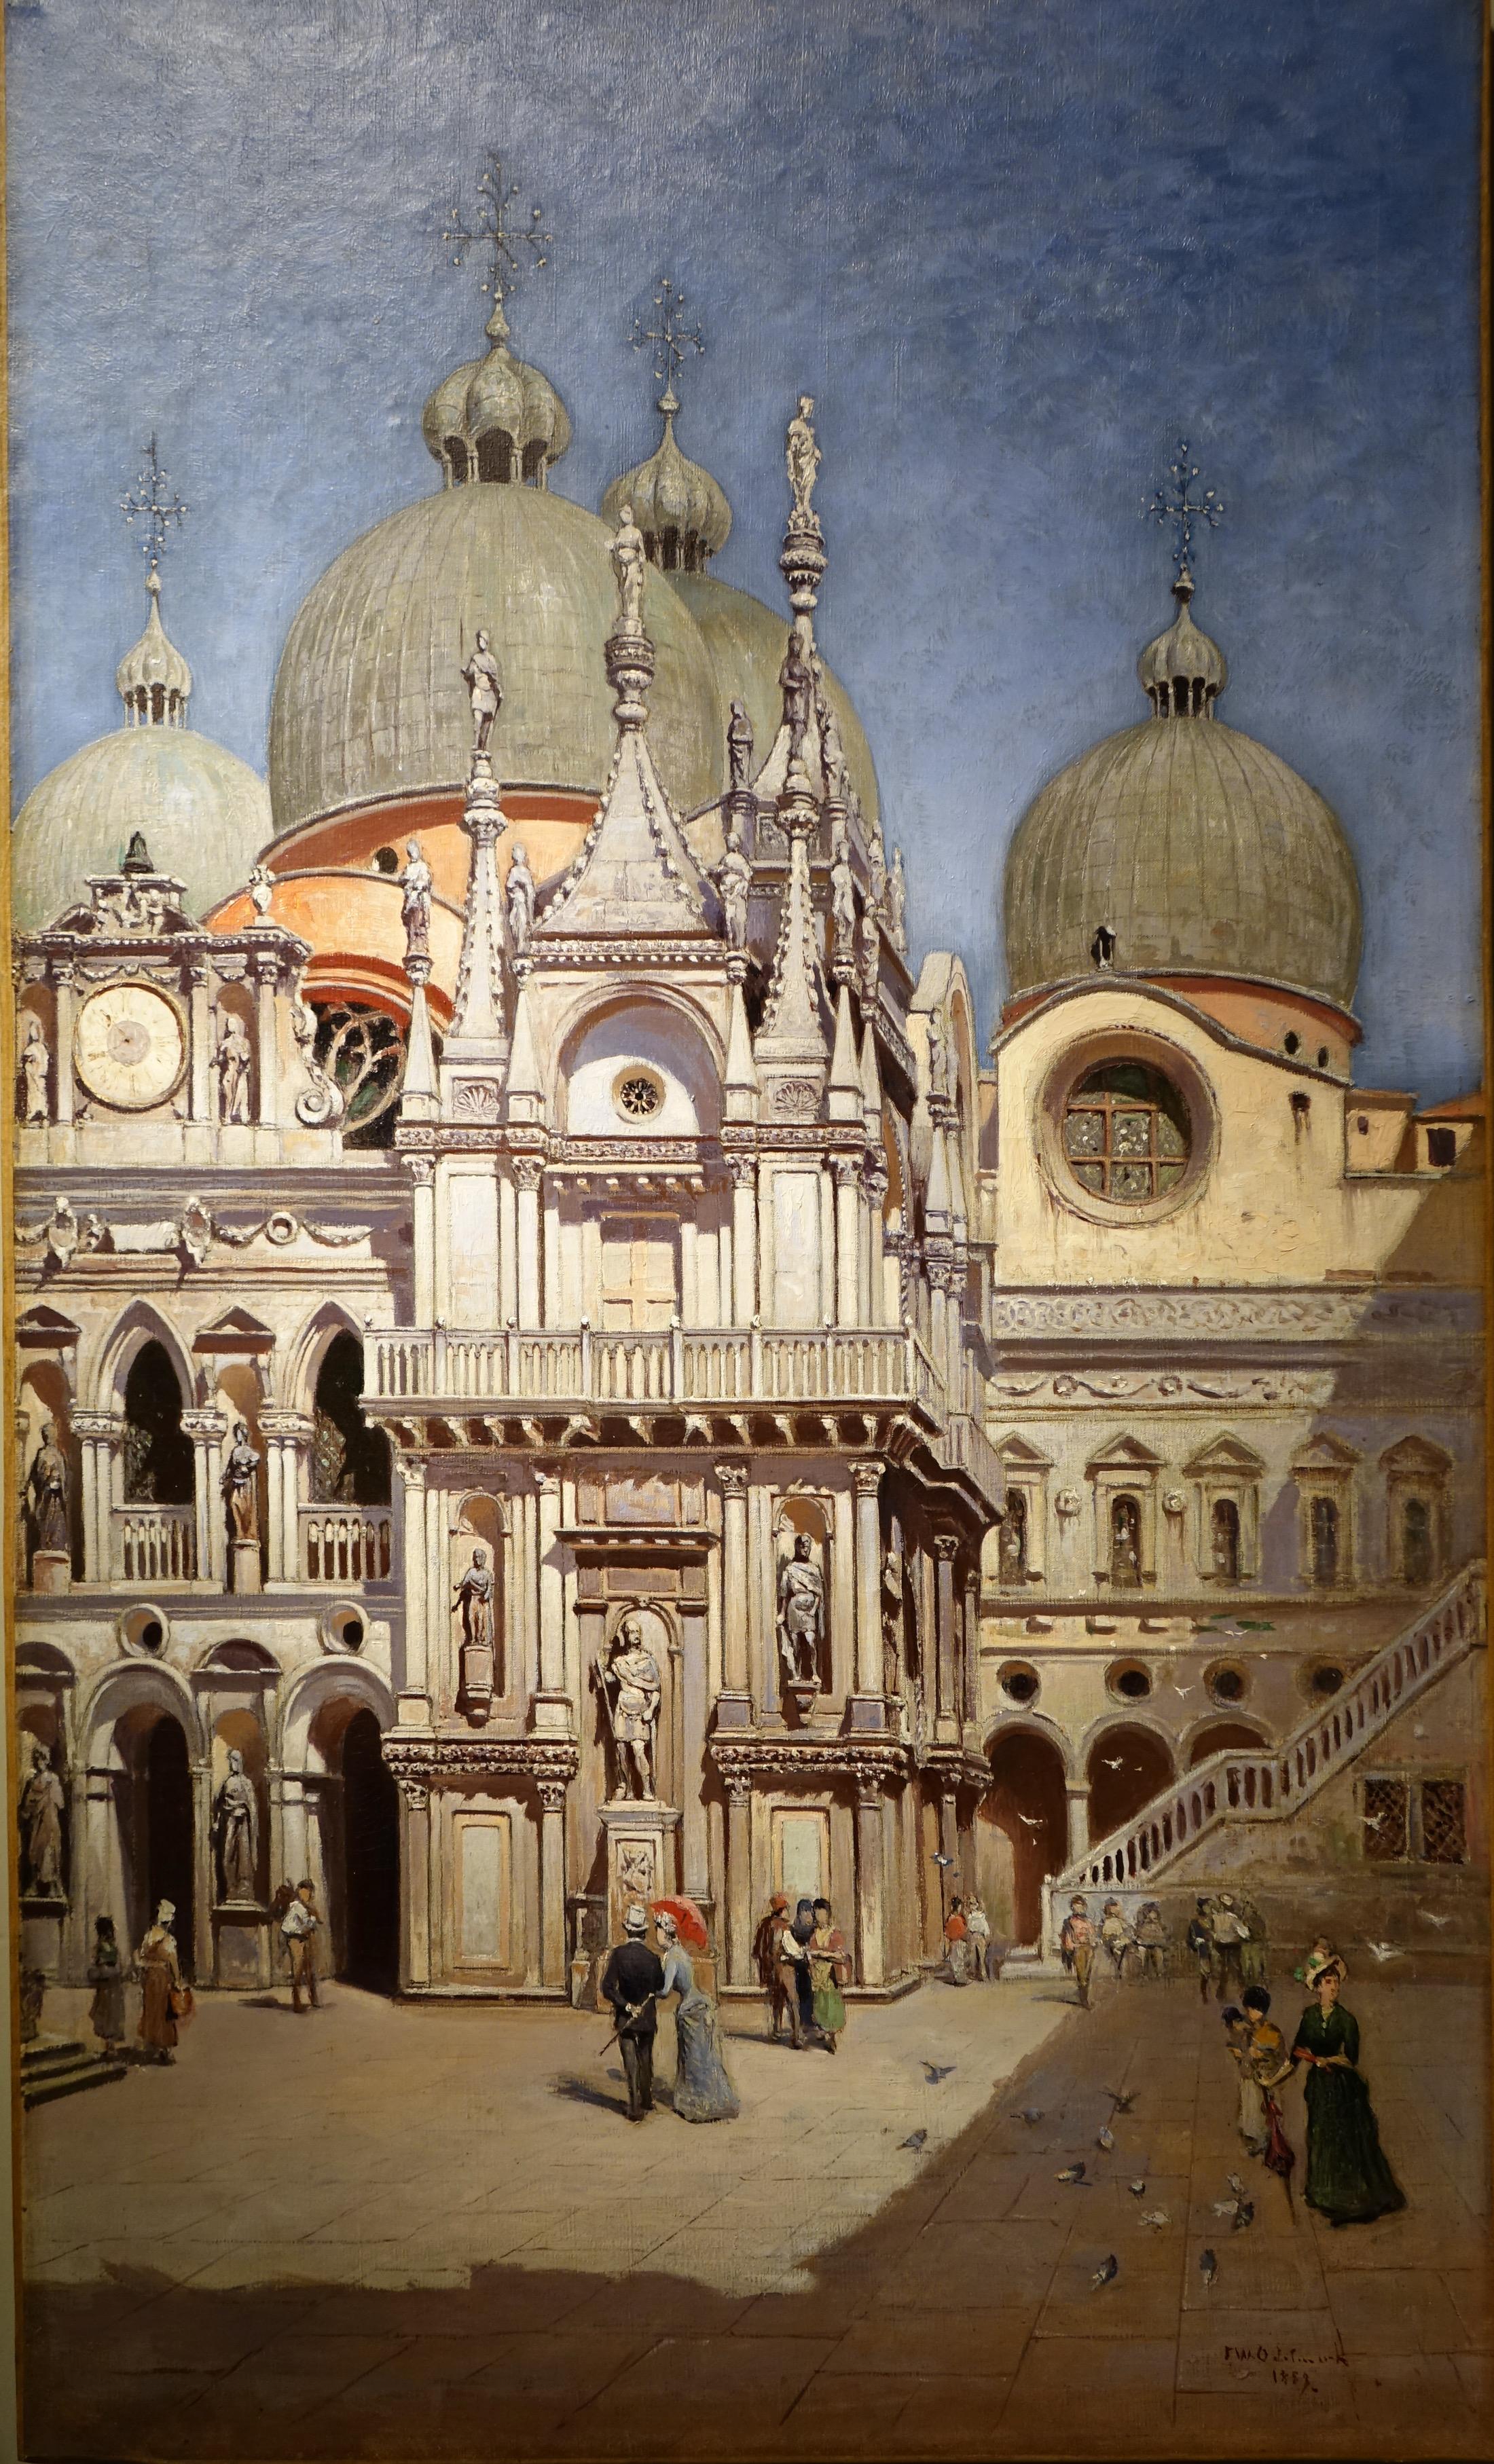 Le palais des Doges à Venise - Frans Wilhelm ODELMARK, 1889